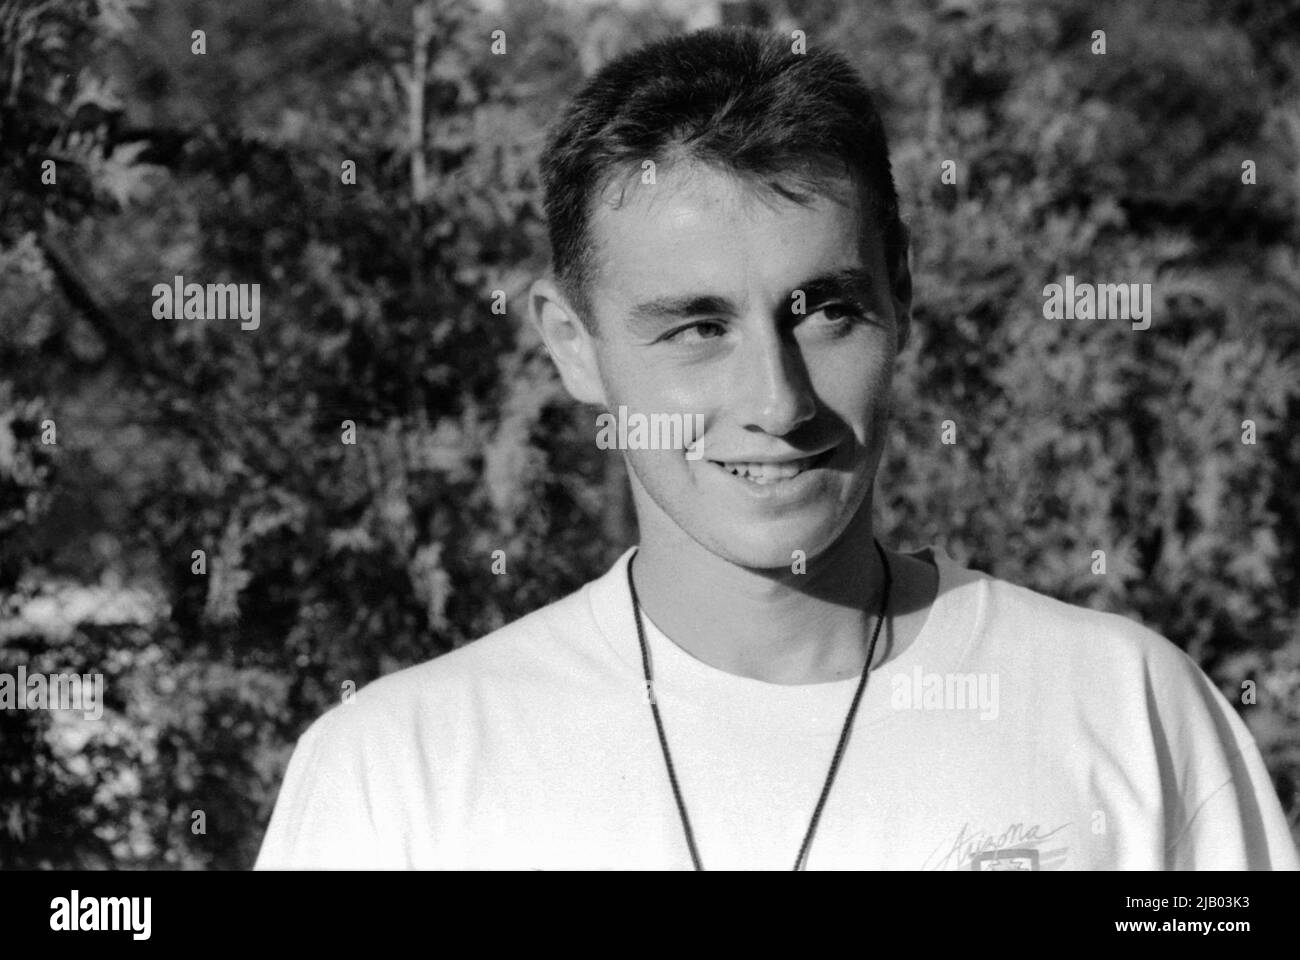 Joueur de tennis roumain Dinu Pescariu, env. 1991 Banque D'Images